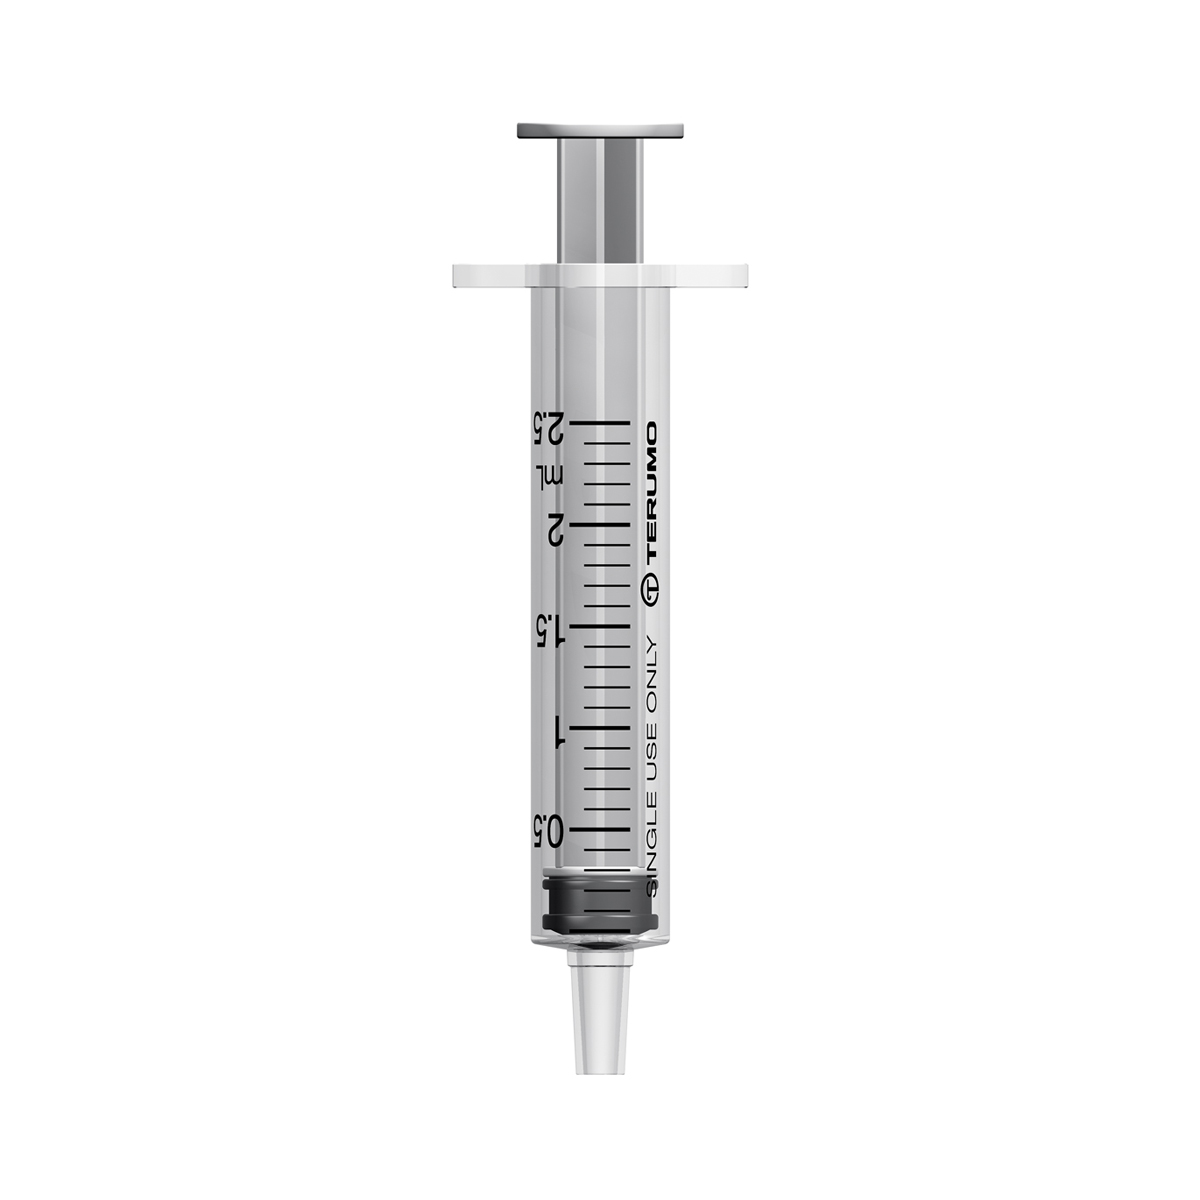 syringe without needle